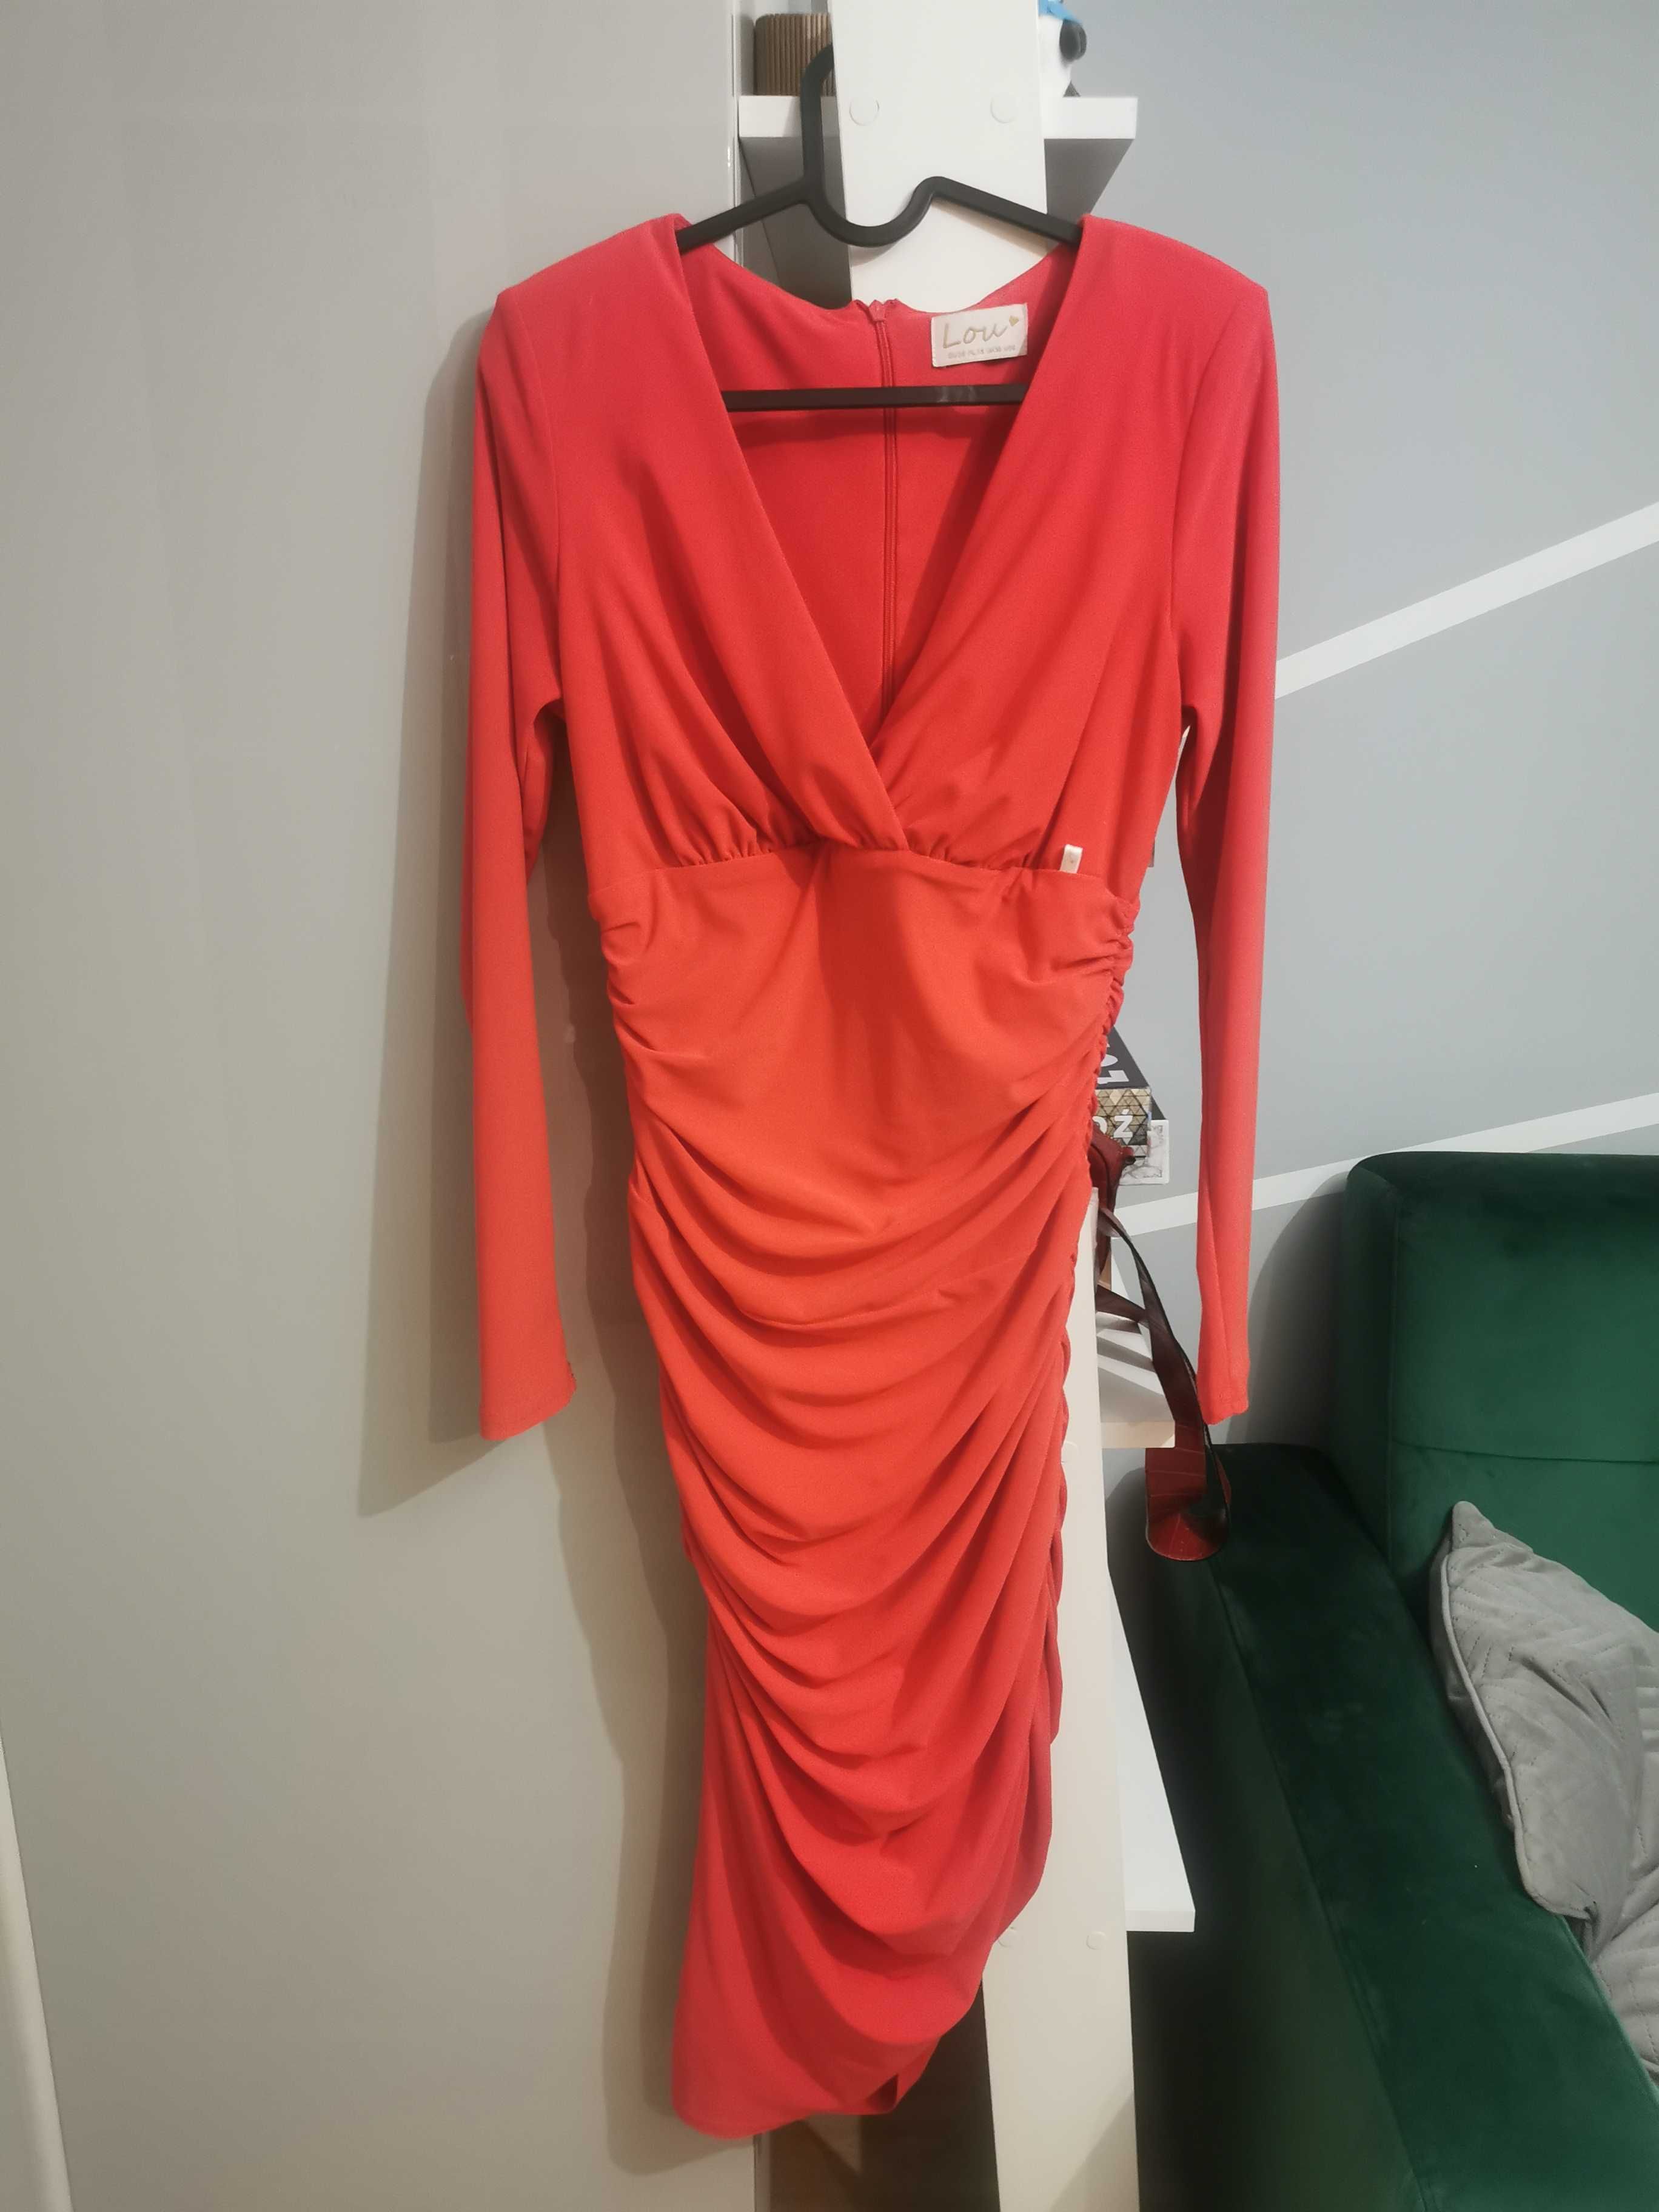 Czerwona sukienka midi z długim rękawem Lizzy, marka Lou - rozmiar 38